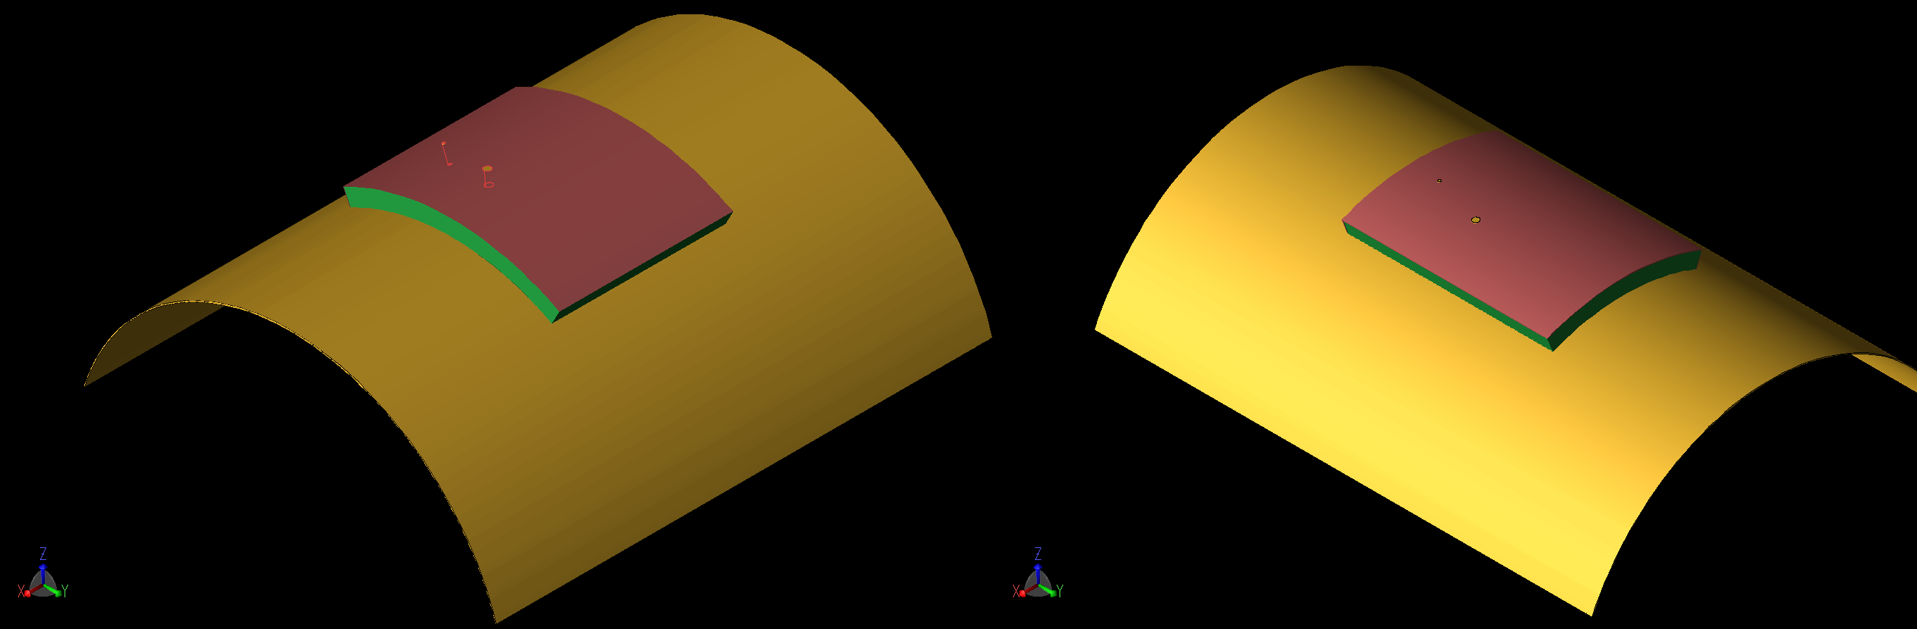 Abbildung 7: Das Pflaster ist in einer gekrümmten Konfiguration dargestellt, bei der der Kurvenradius 40 mm beträgt. Auf der linken Seite (7a) verläuft die Krümmung um die X-Achse, auf der rechten Seite (7b) um die Y-Achse. Ähnliche Geometrien wurden für eine Krümmung von 80 mm r simuliert...